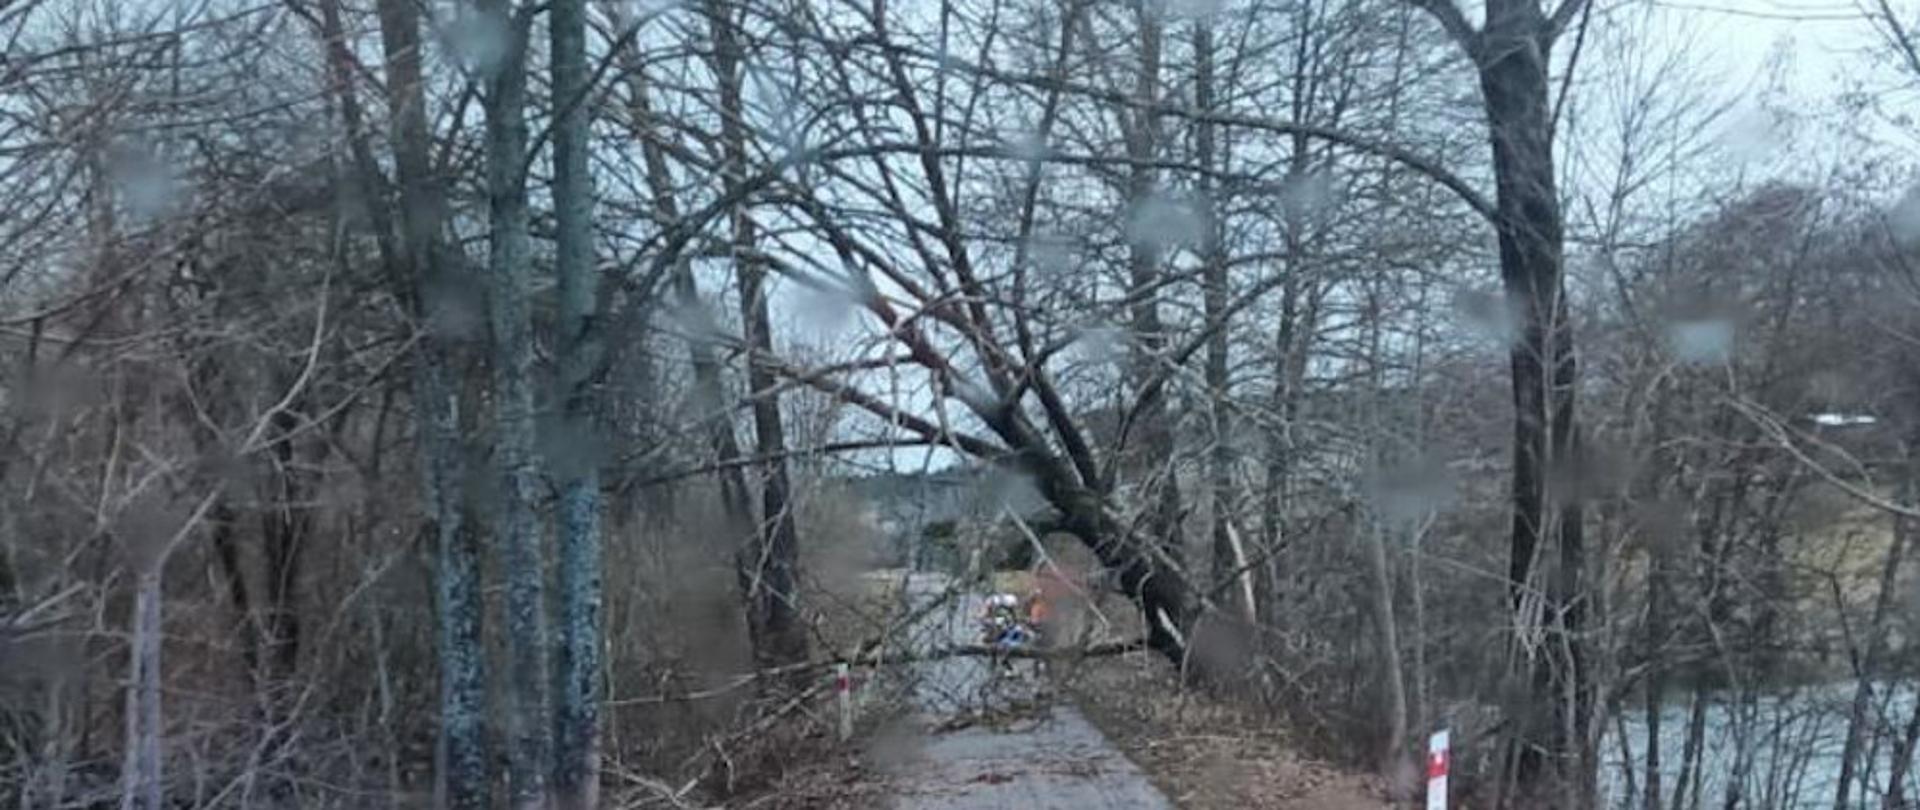 Silny wiatr w powiecie szczecineckim - drzewo przewrócone na drogę, blokuje przejazd